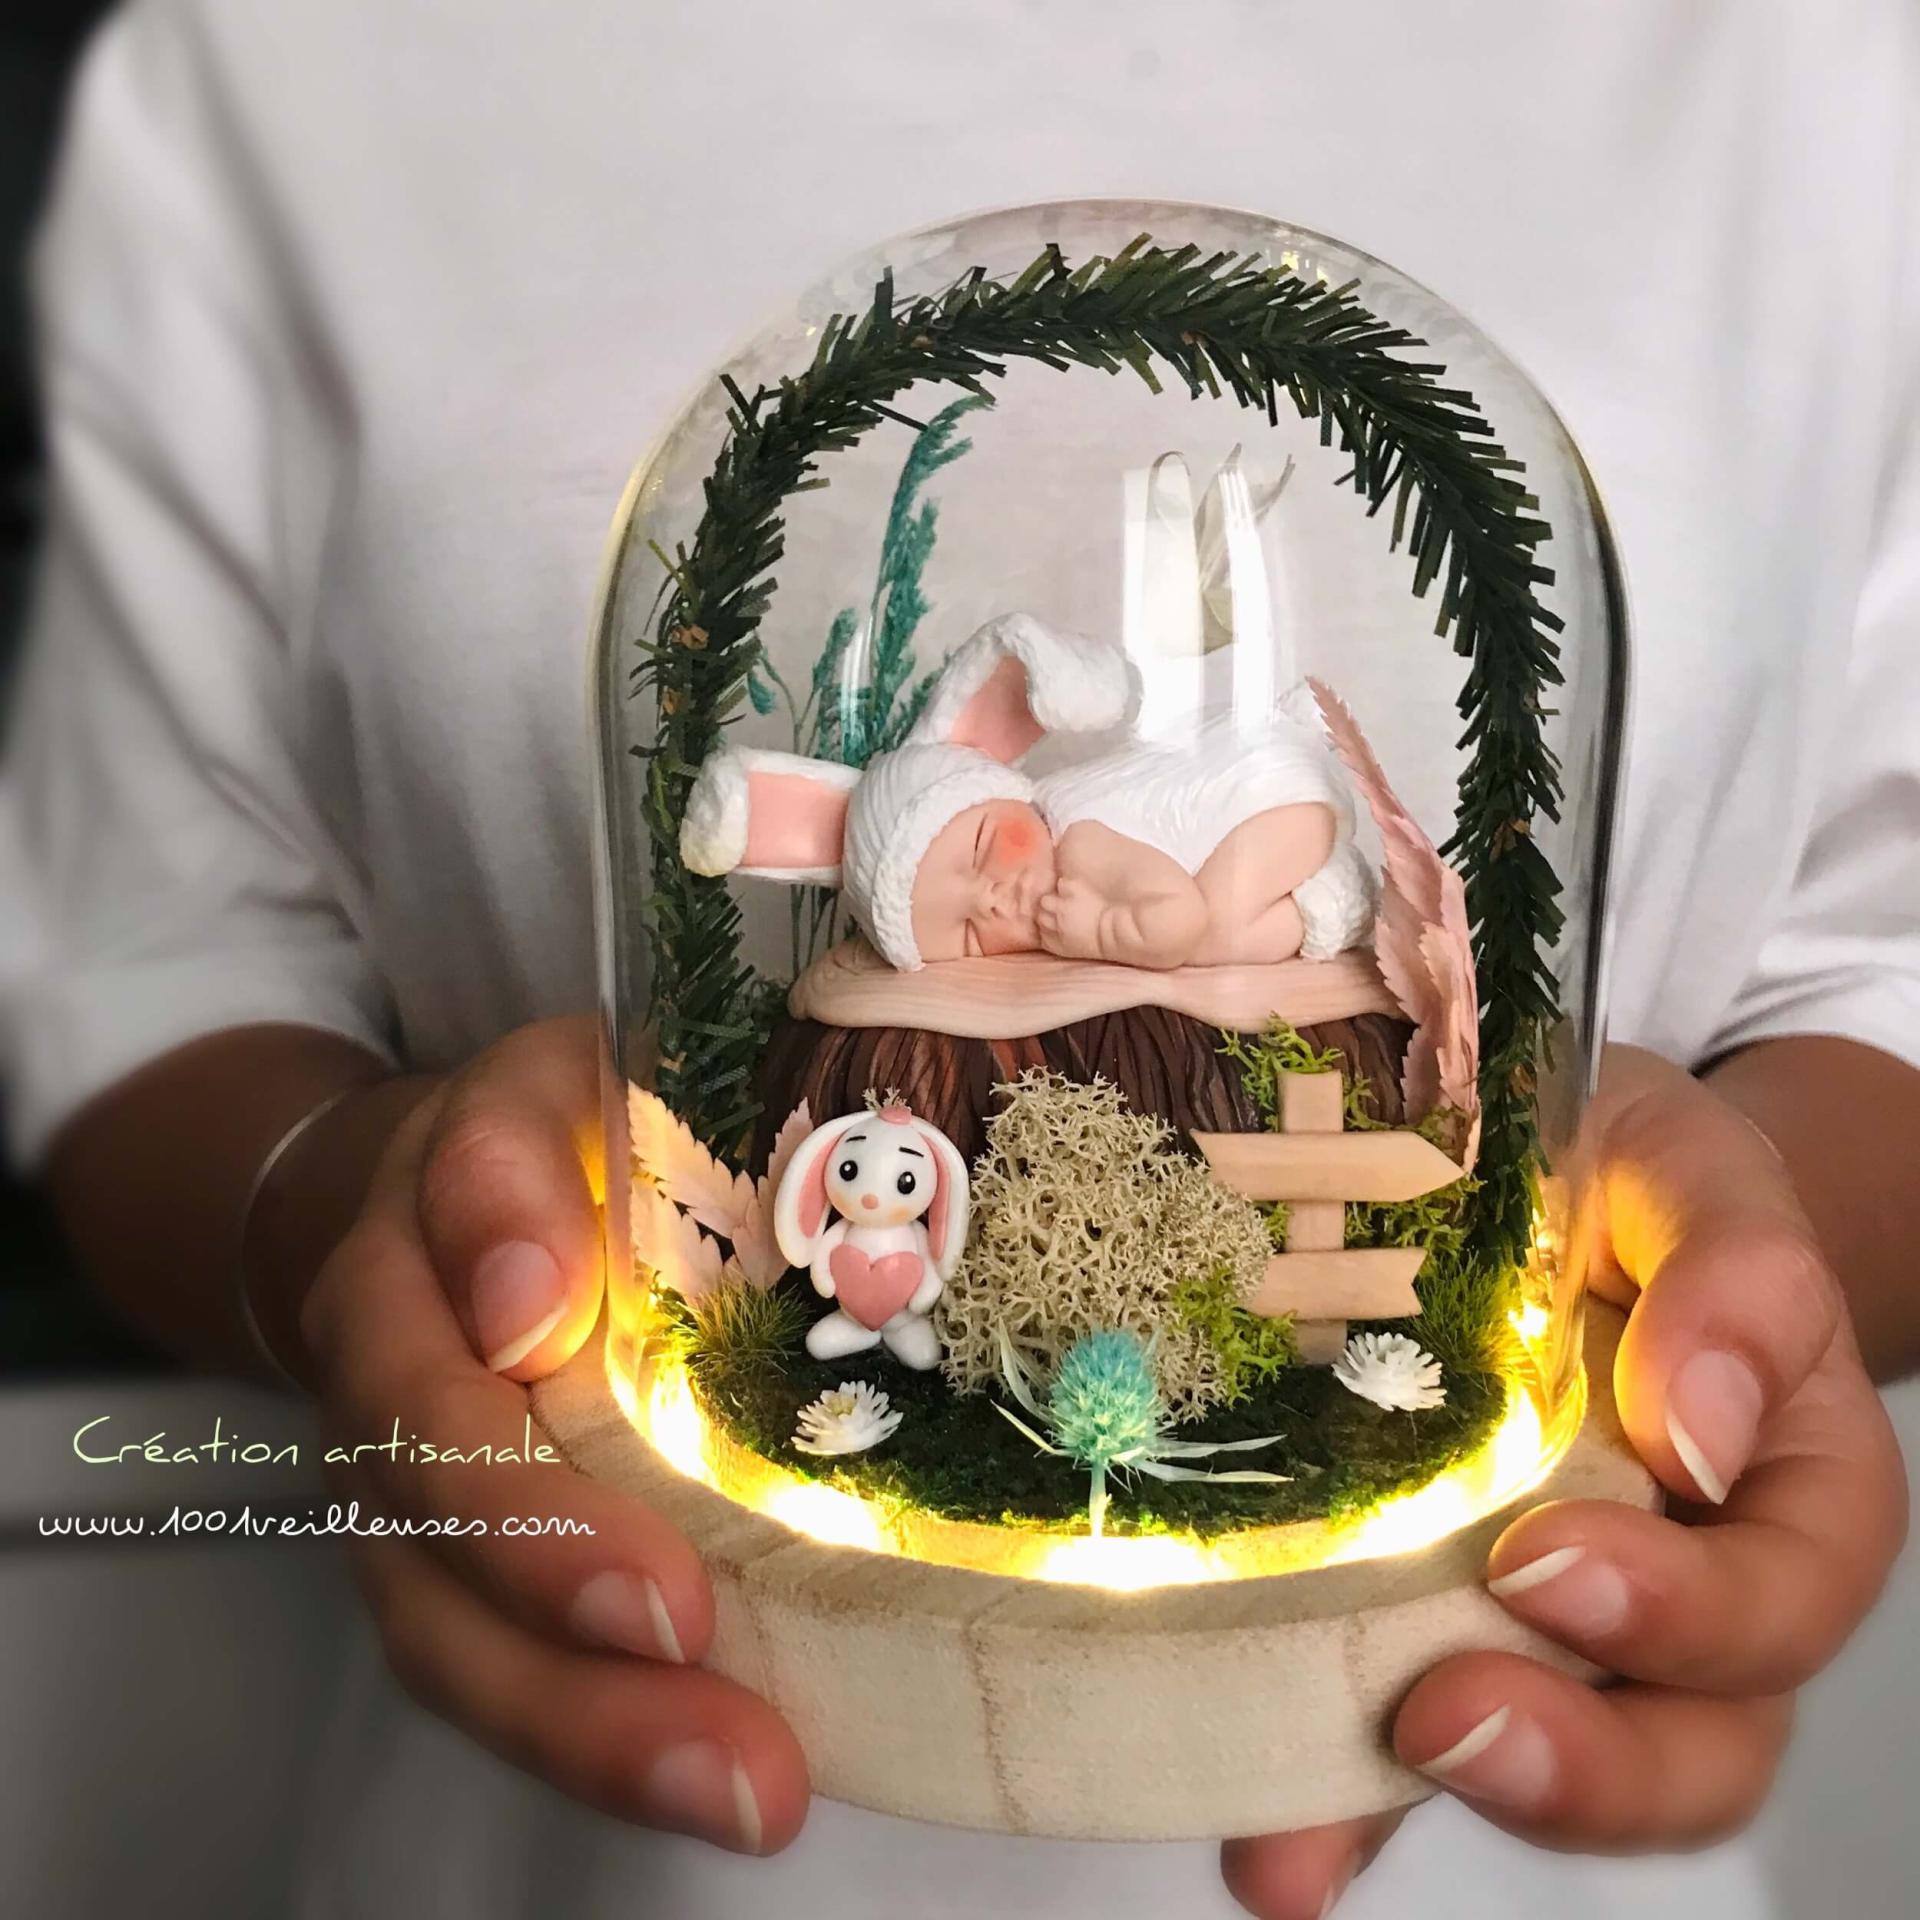 Campana LED luminosa con tema de conejo para personalizar - creación artesanal - original - hecha a mano